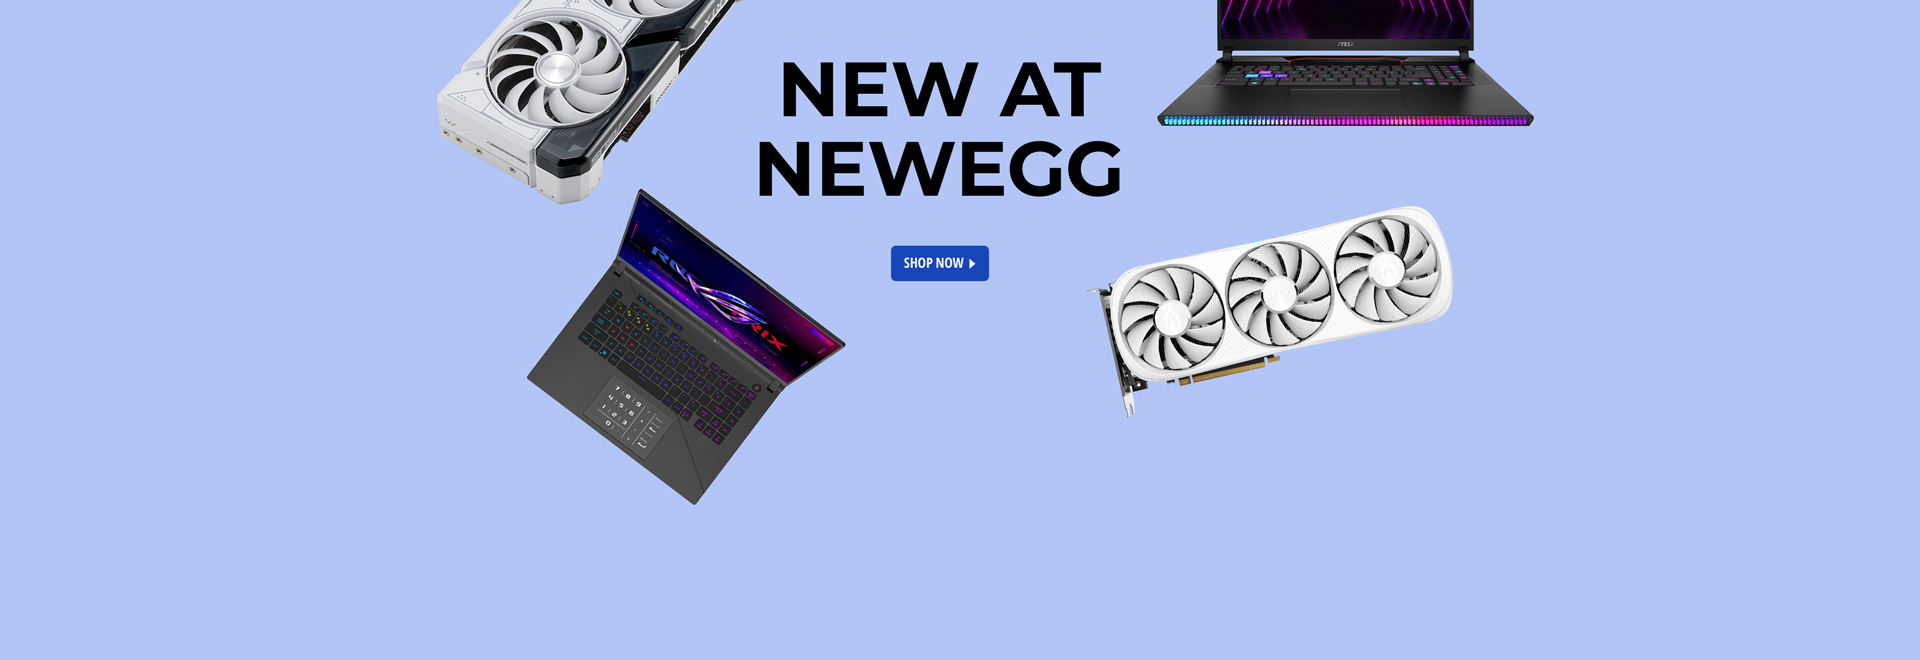 New at Newegg